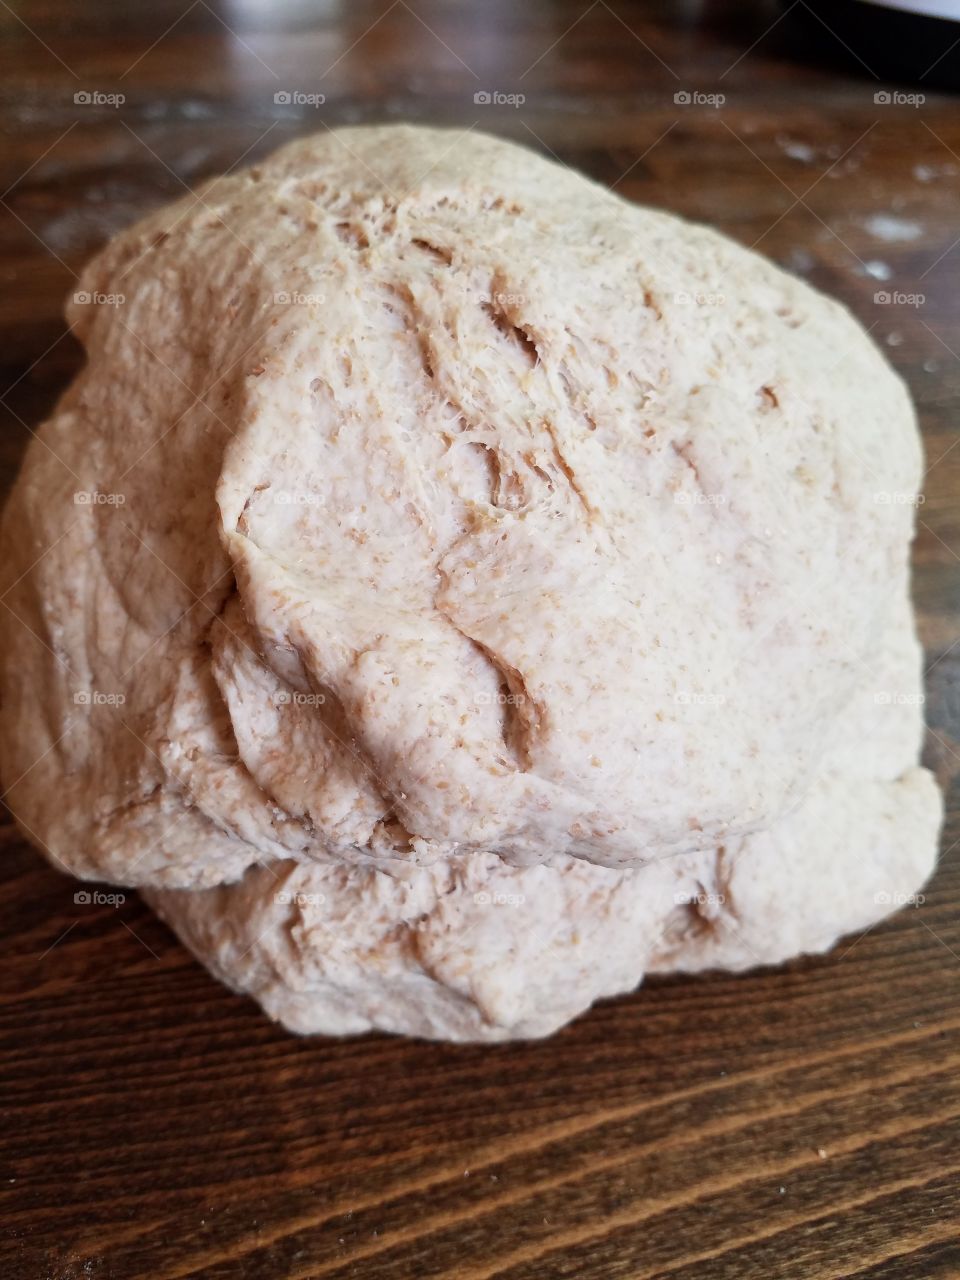 Wheat bread dough